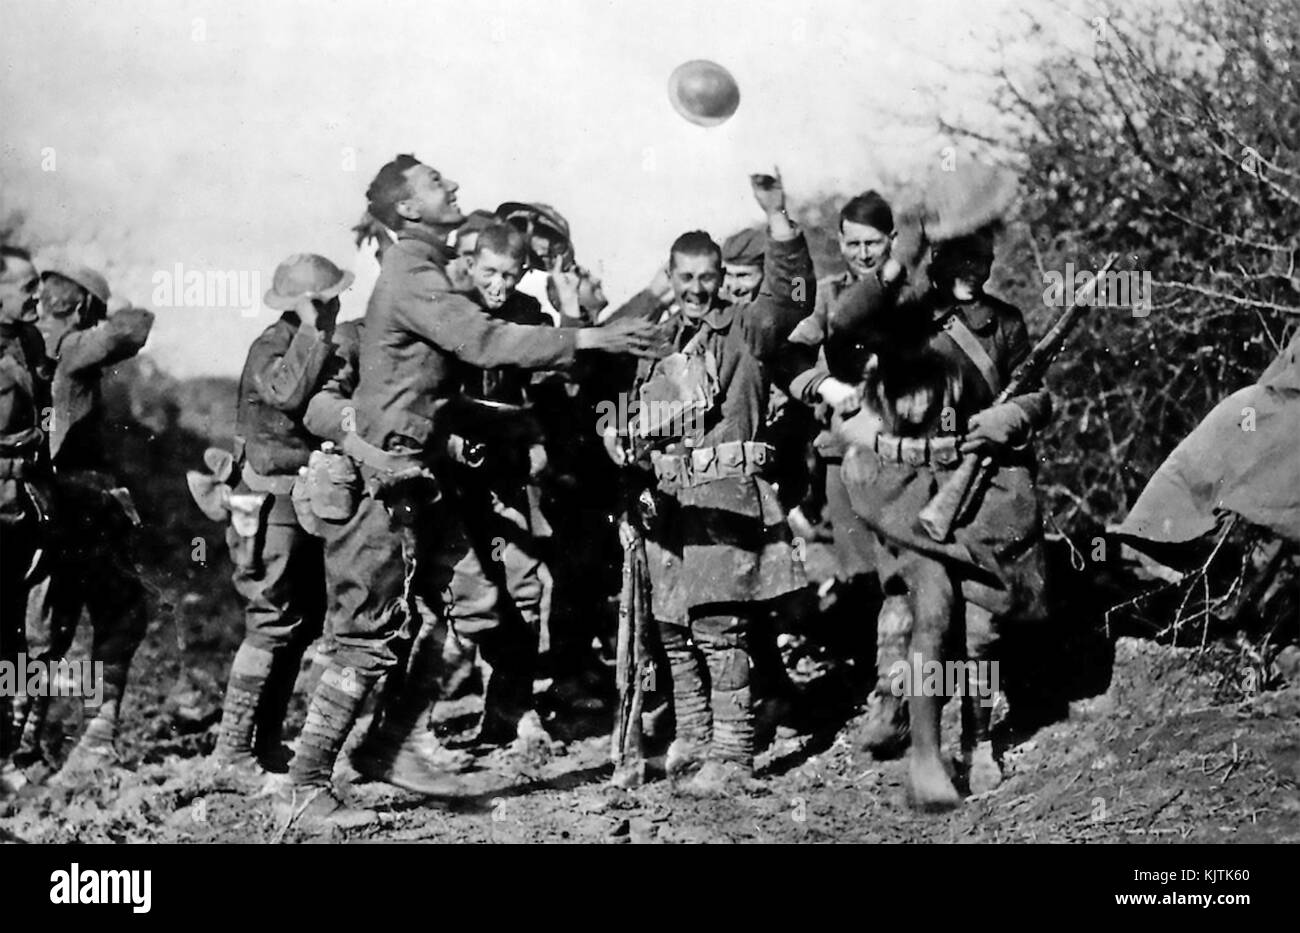 L'ARMISTICE DE LA PREMIÈRE GUERRE MONDIALE En novembre 1918. Les soldats américains en France célébrer la signature. Photo : US Signal Corps Banque D'Images